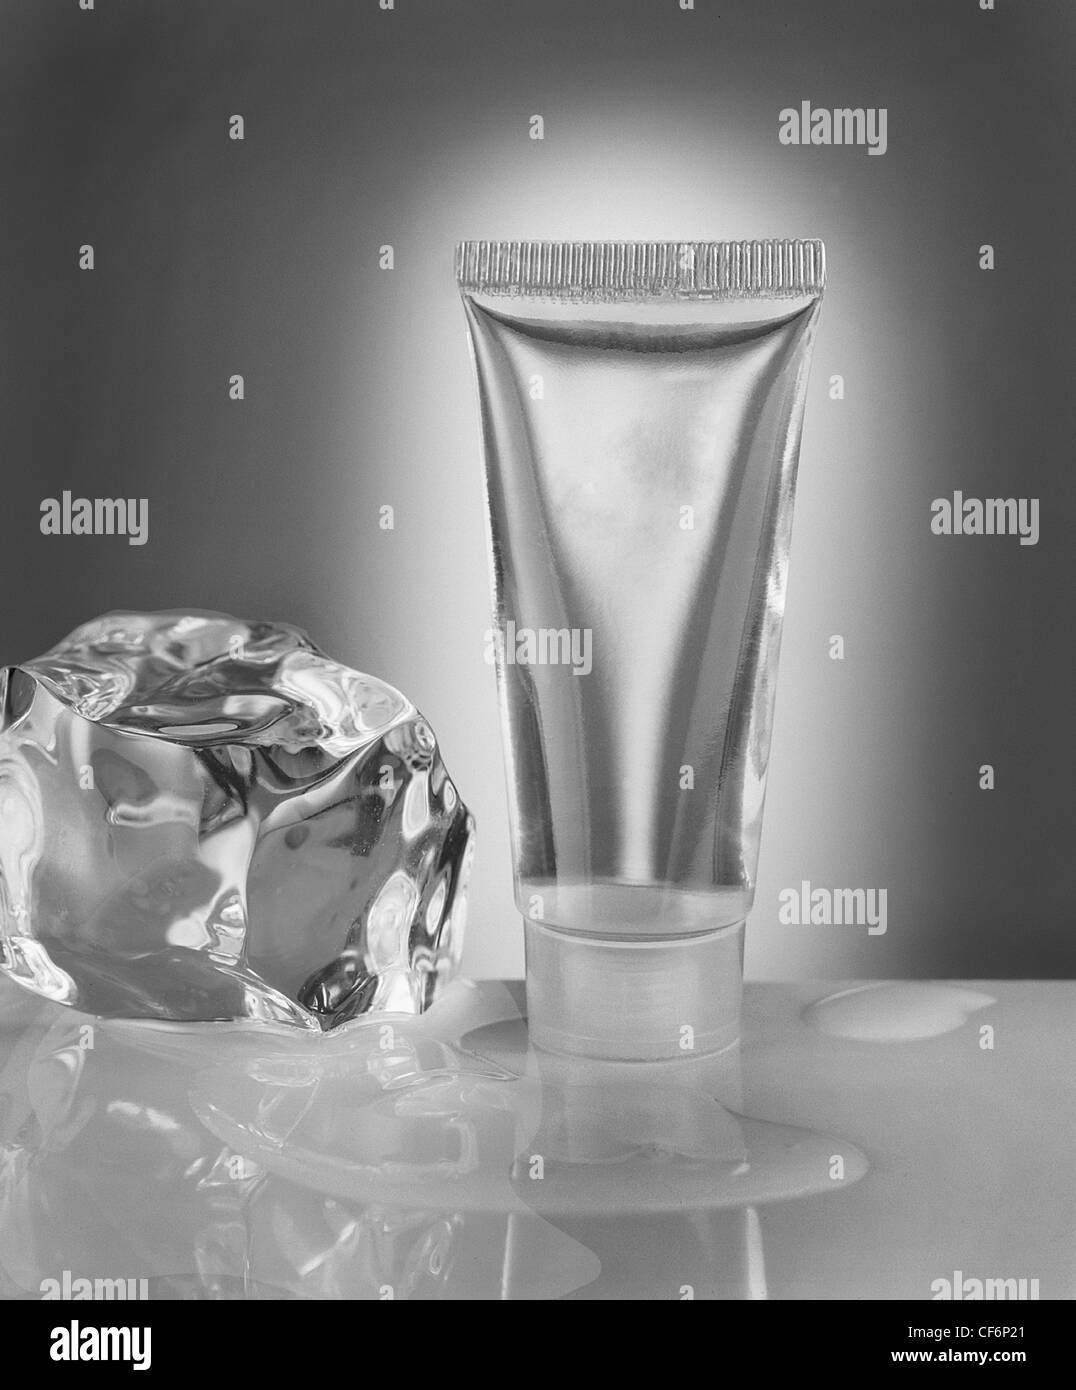 Photographie conceptuelle du tube cosmétique de sérum transparent avec cube de glace et eau. Image monochromatique Banque D'Images